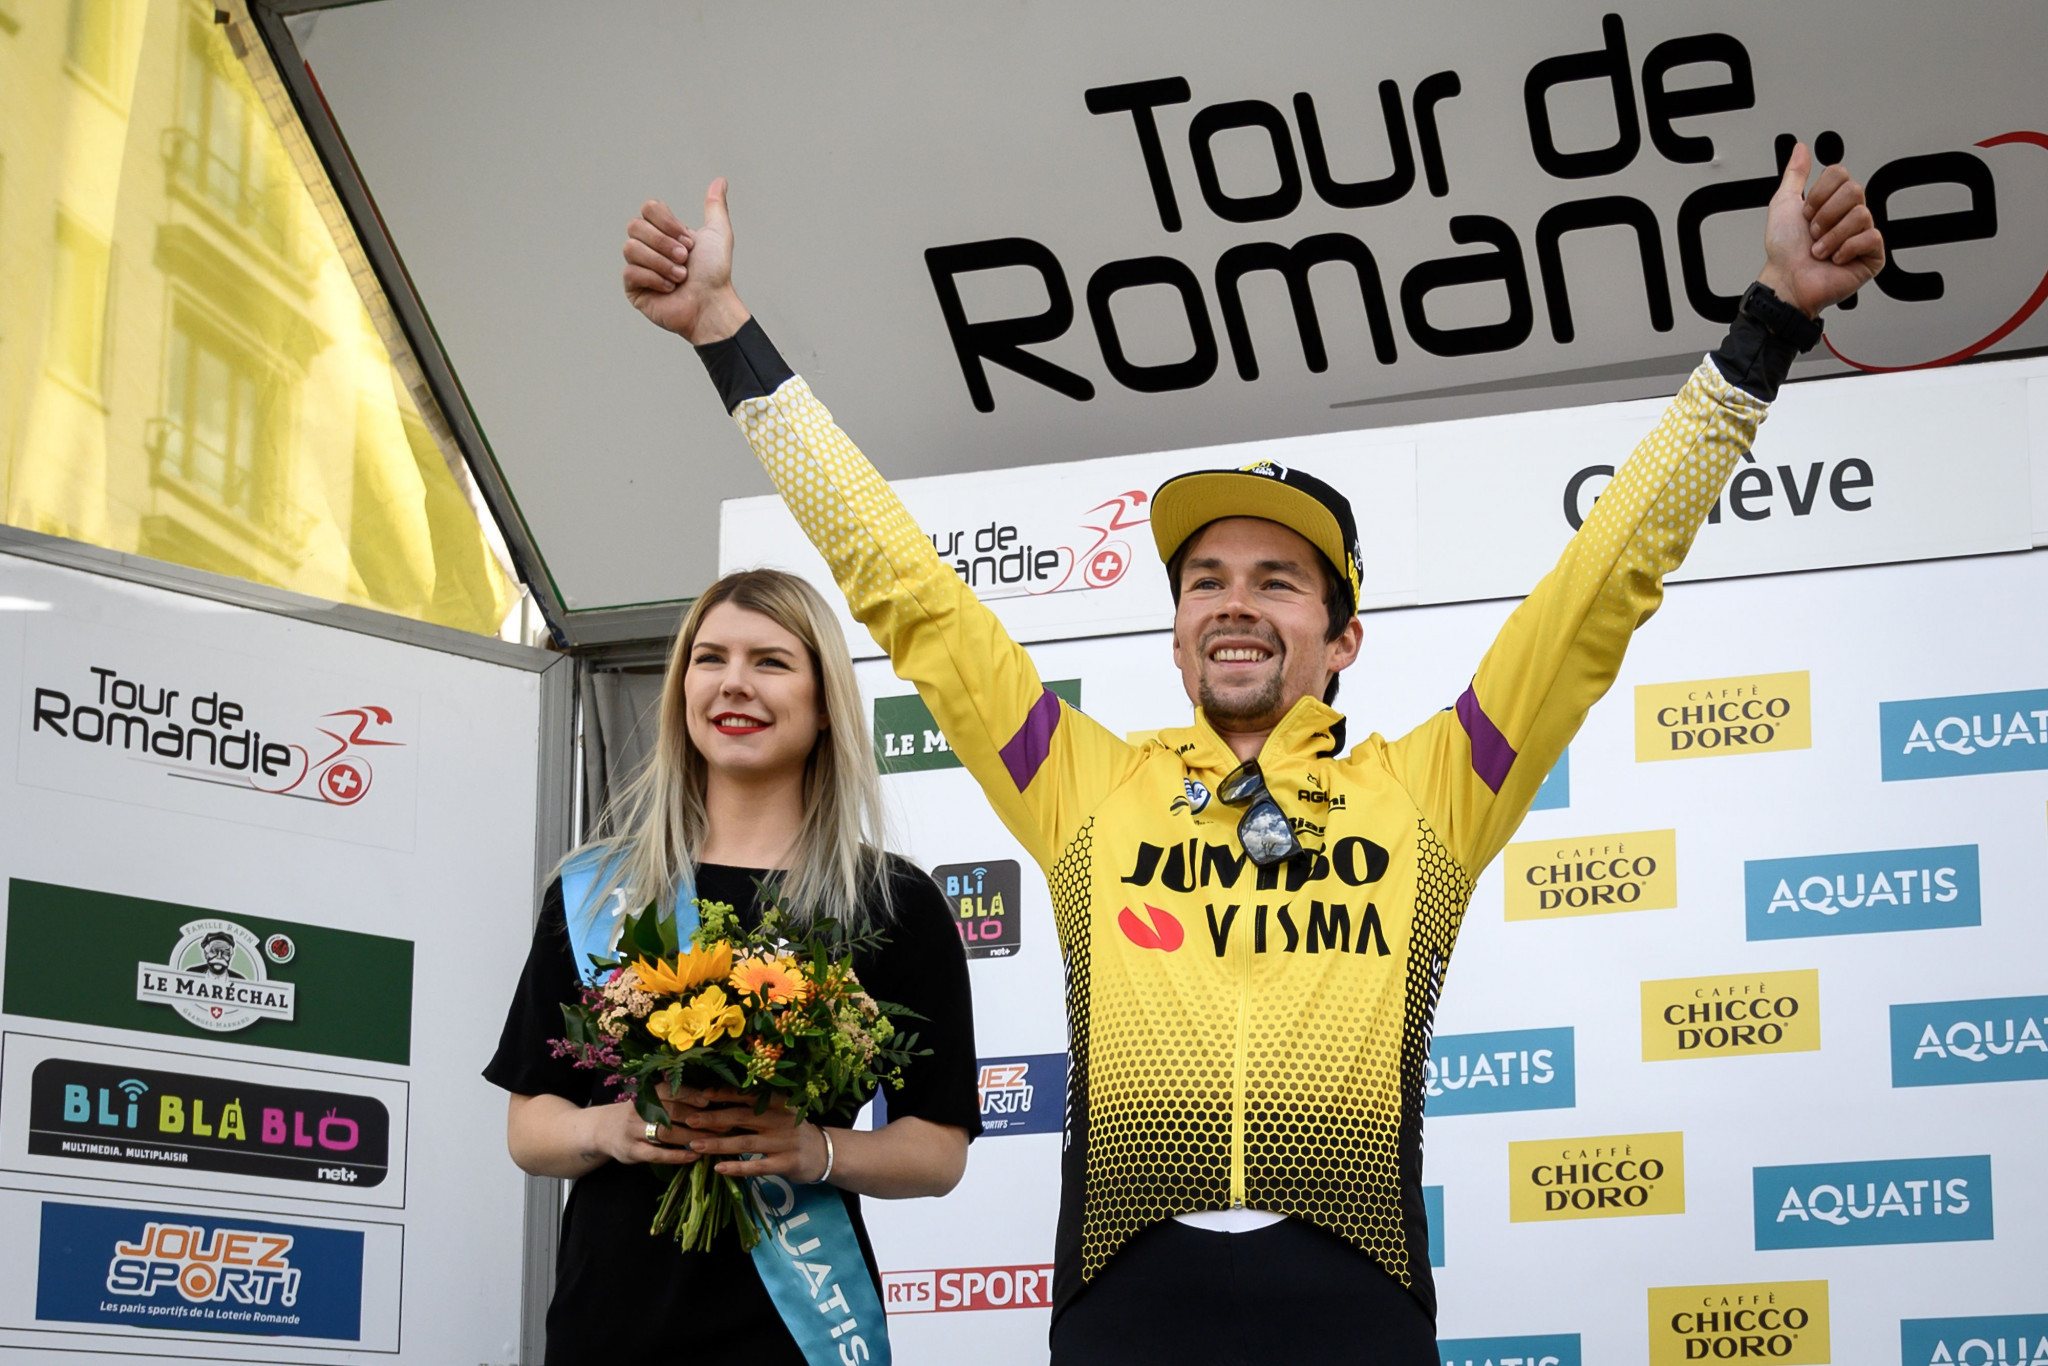 Roglič seals second consecutive Tour de Romandie triumph with time trial victory